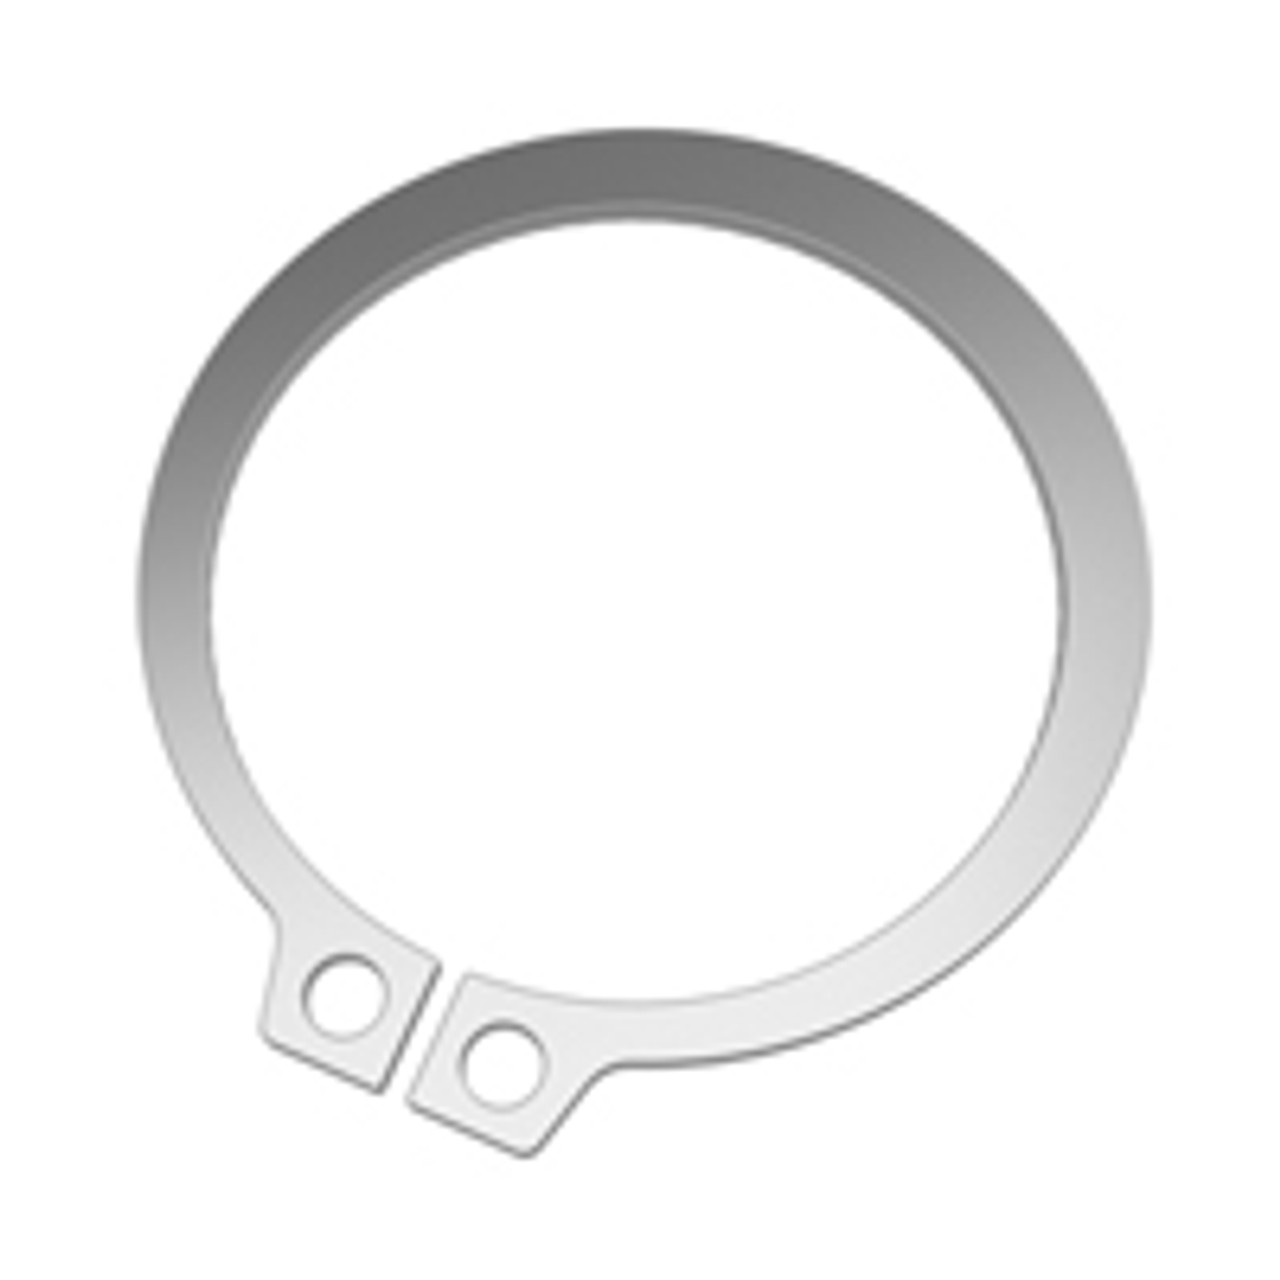 External SAE Stainless Standard Retaining Ring  SH-0143-H